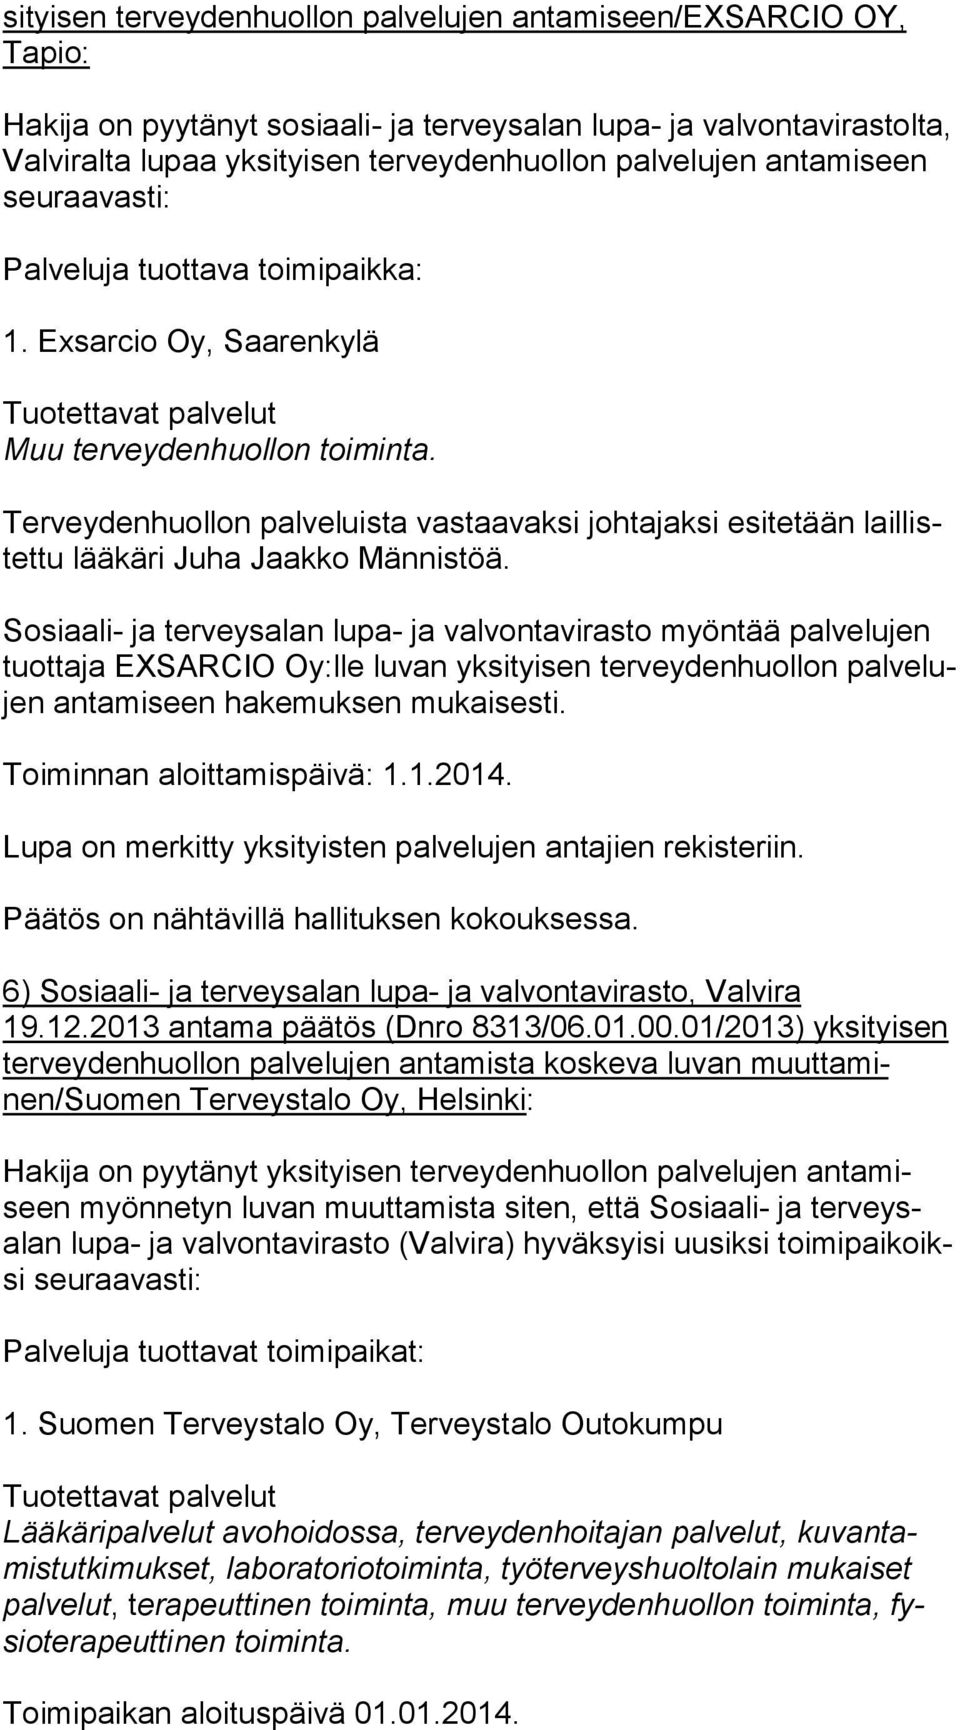 Terveydenhuollon palveluista vastaavaksi johtajaksi esitetään lail listet tu lääkäri Juha Jaakko Männistöä.